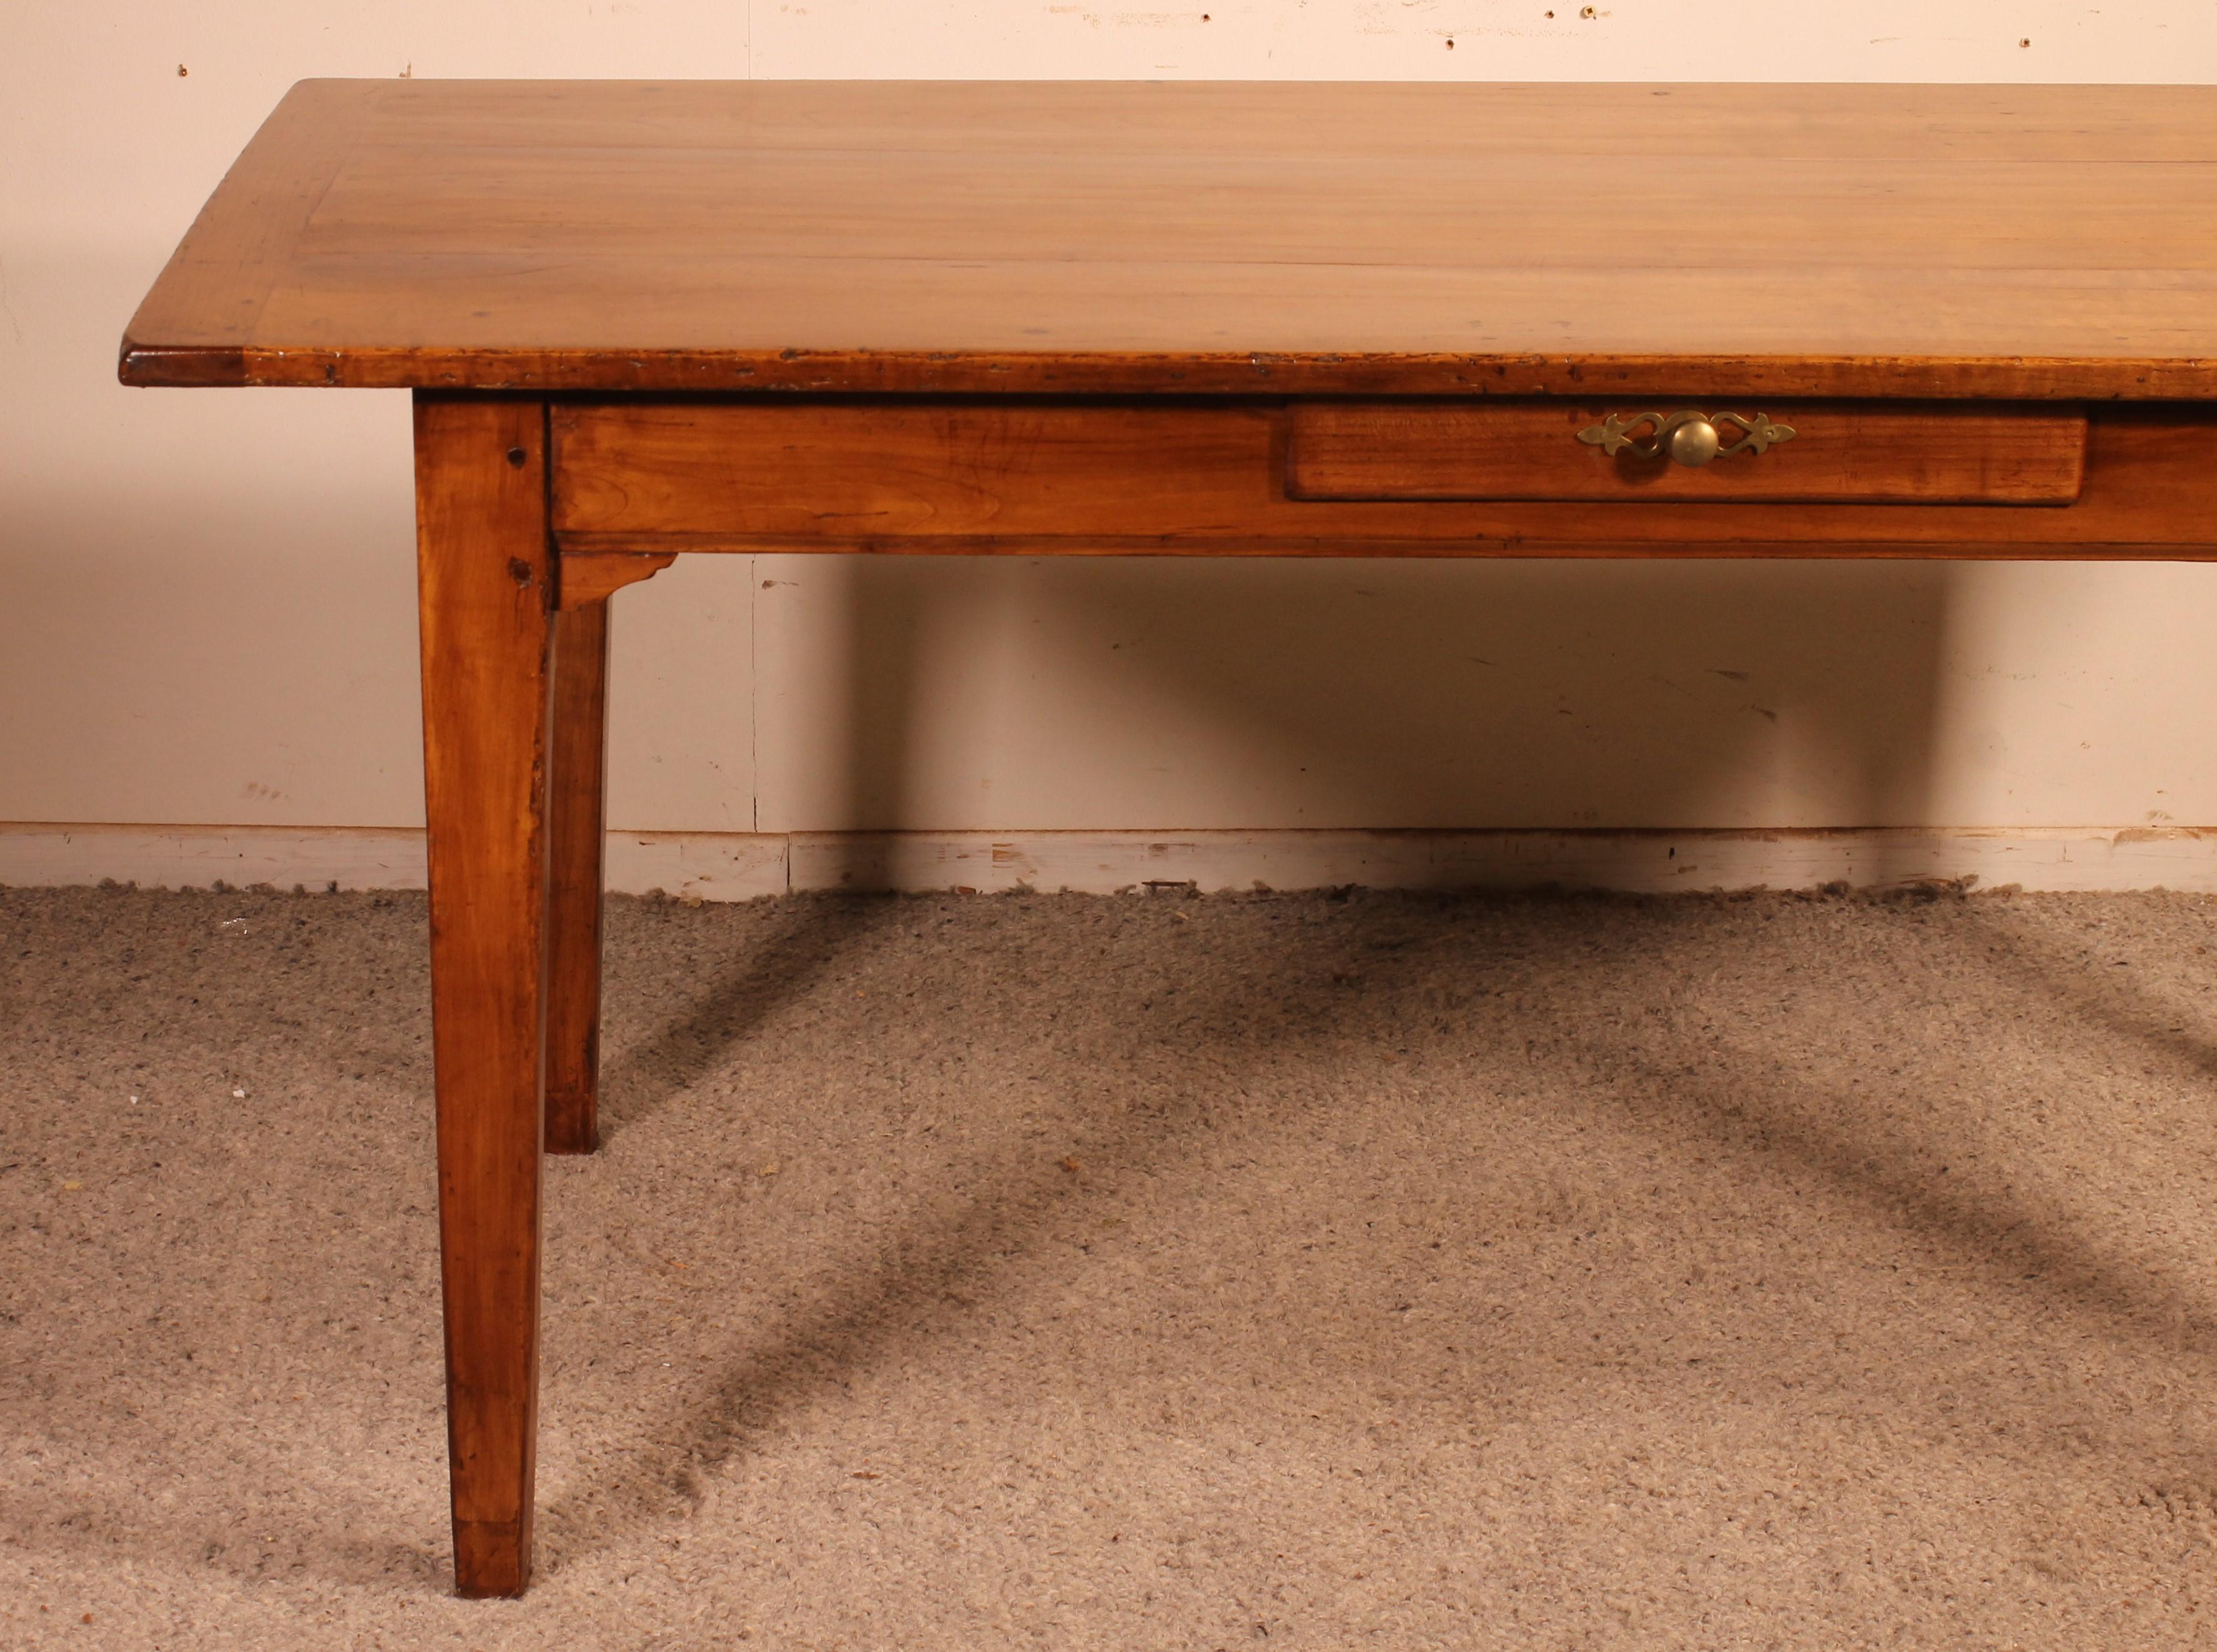 herrlichen Tisch aus dem 19. Jahrhundert in Kirschholz aus Frankreich mit einer Schublade in den Gürtel.

Kleines, seltenes Modell, da es oft größere gibt, die als Esszimmertisch oder Schreibtisch mit geraden Louis XVI-Beinen verwendet werden